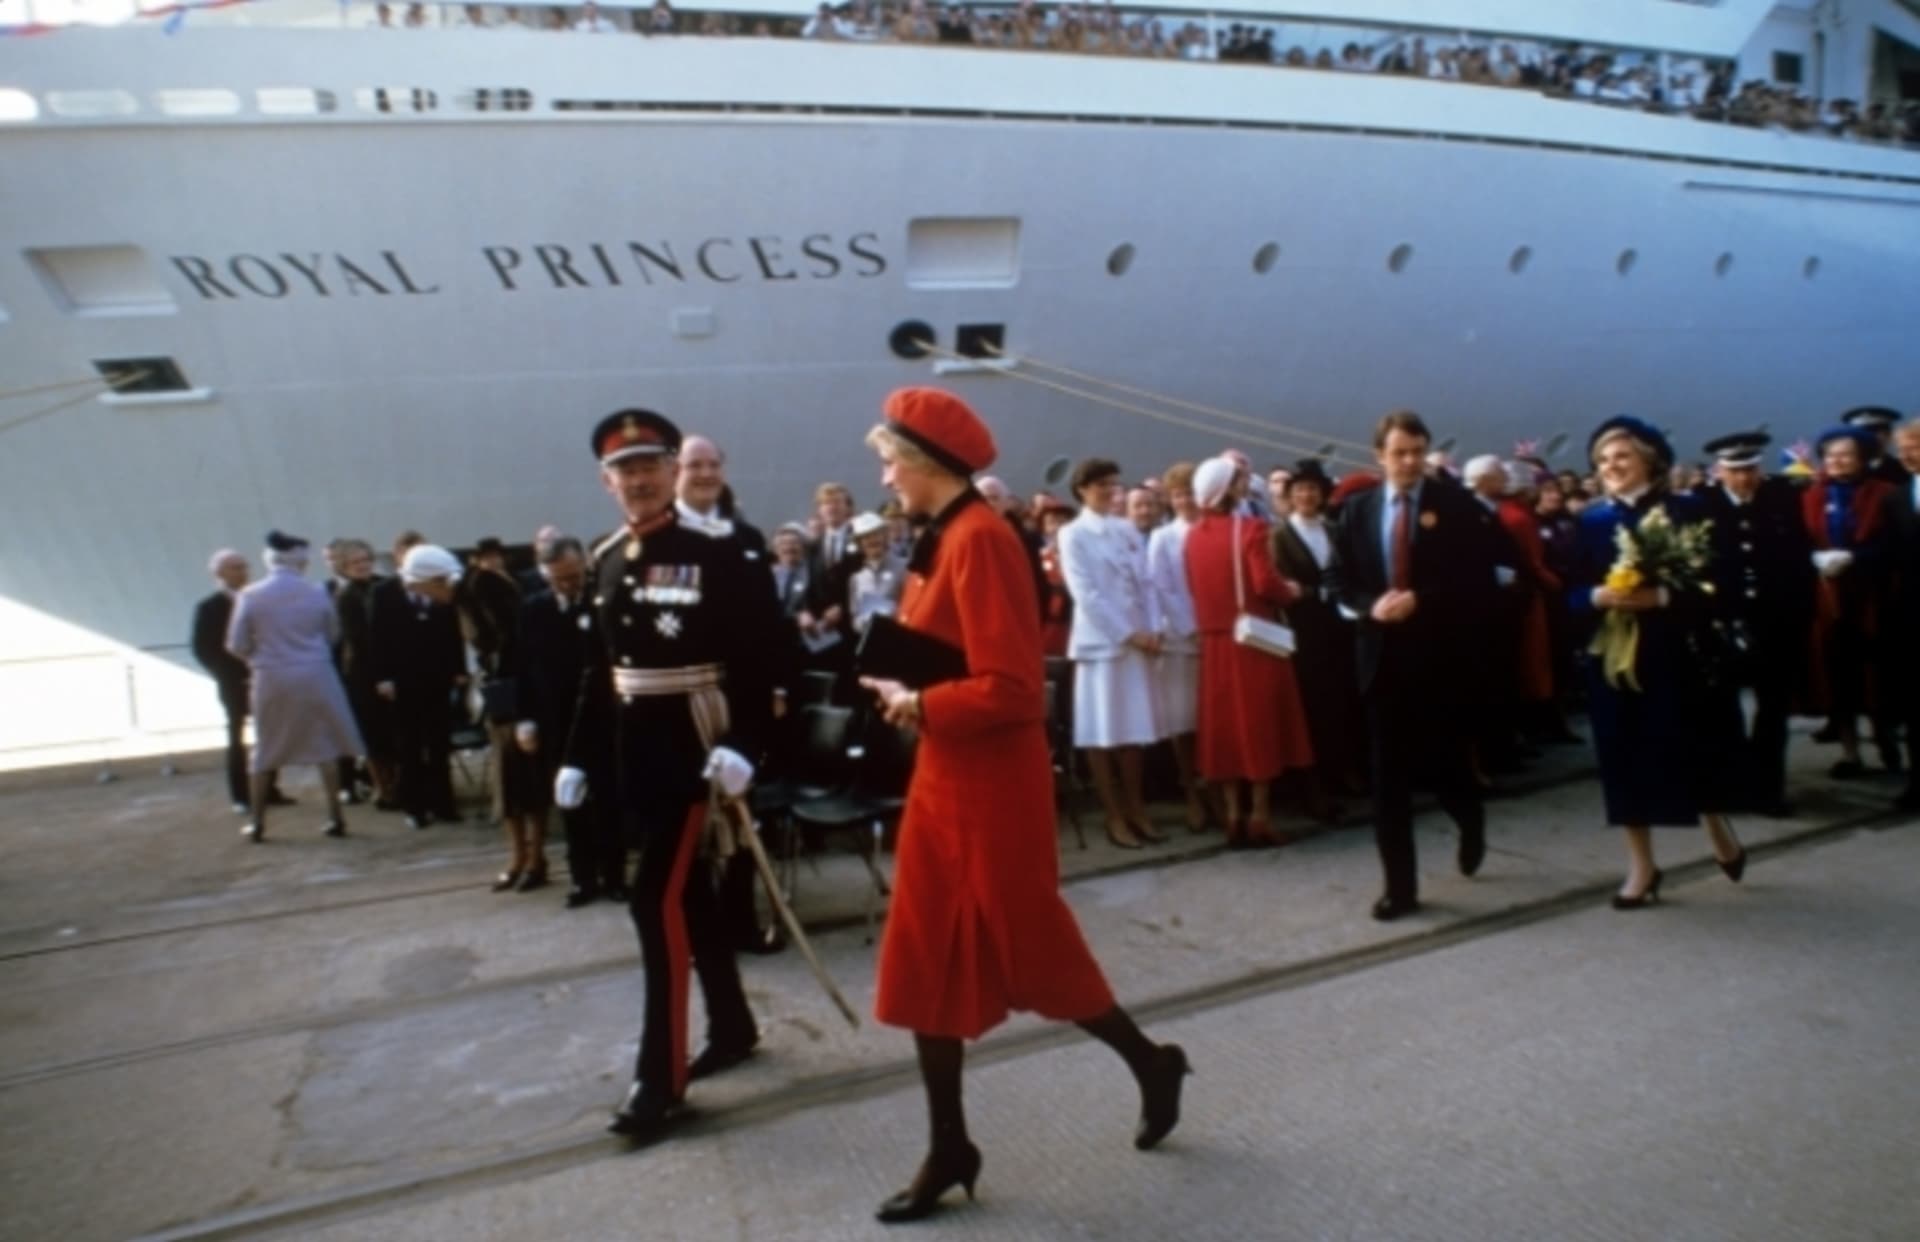 Vévodkyně Kate křtila novou loď, stejně jako v roce 1984 princezna Diana